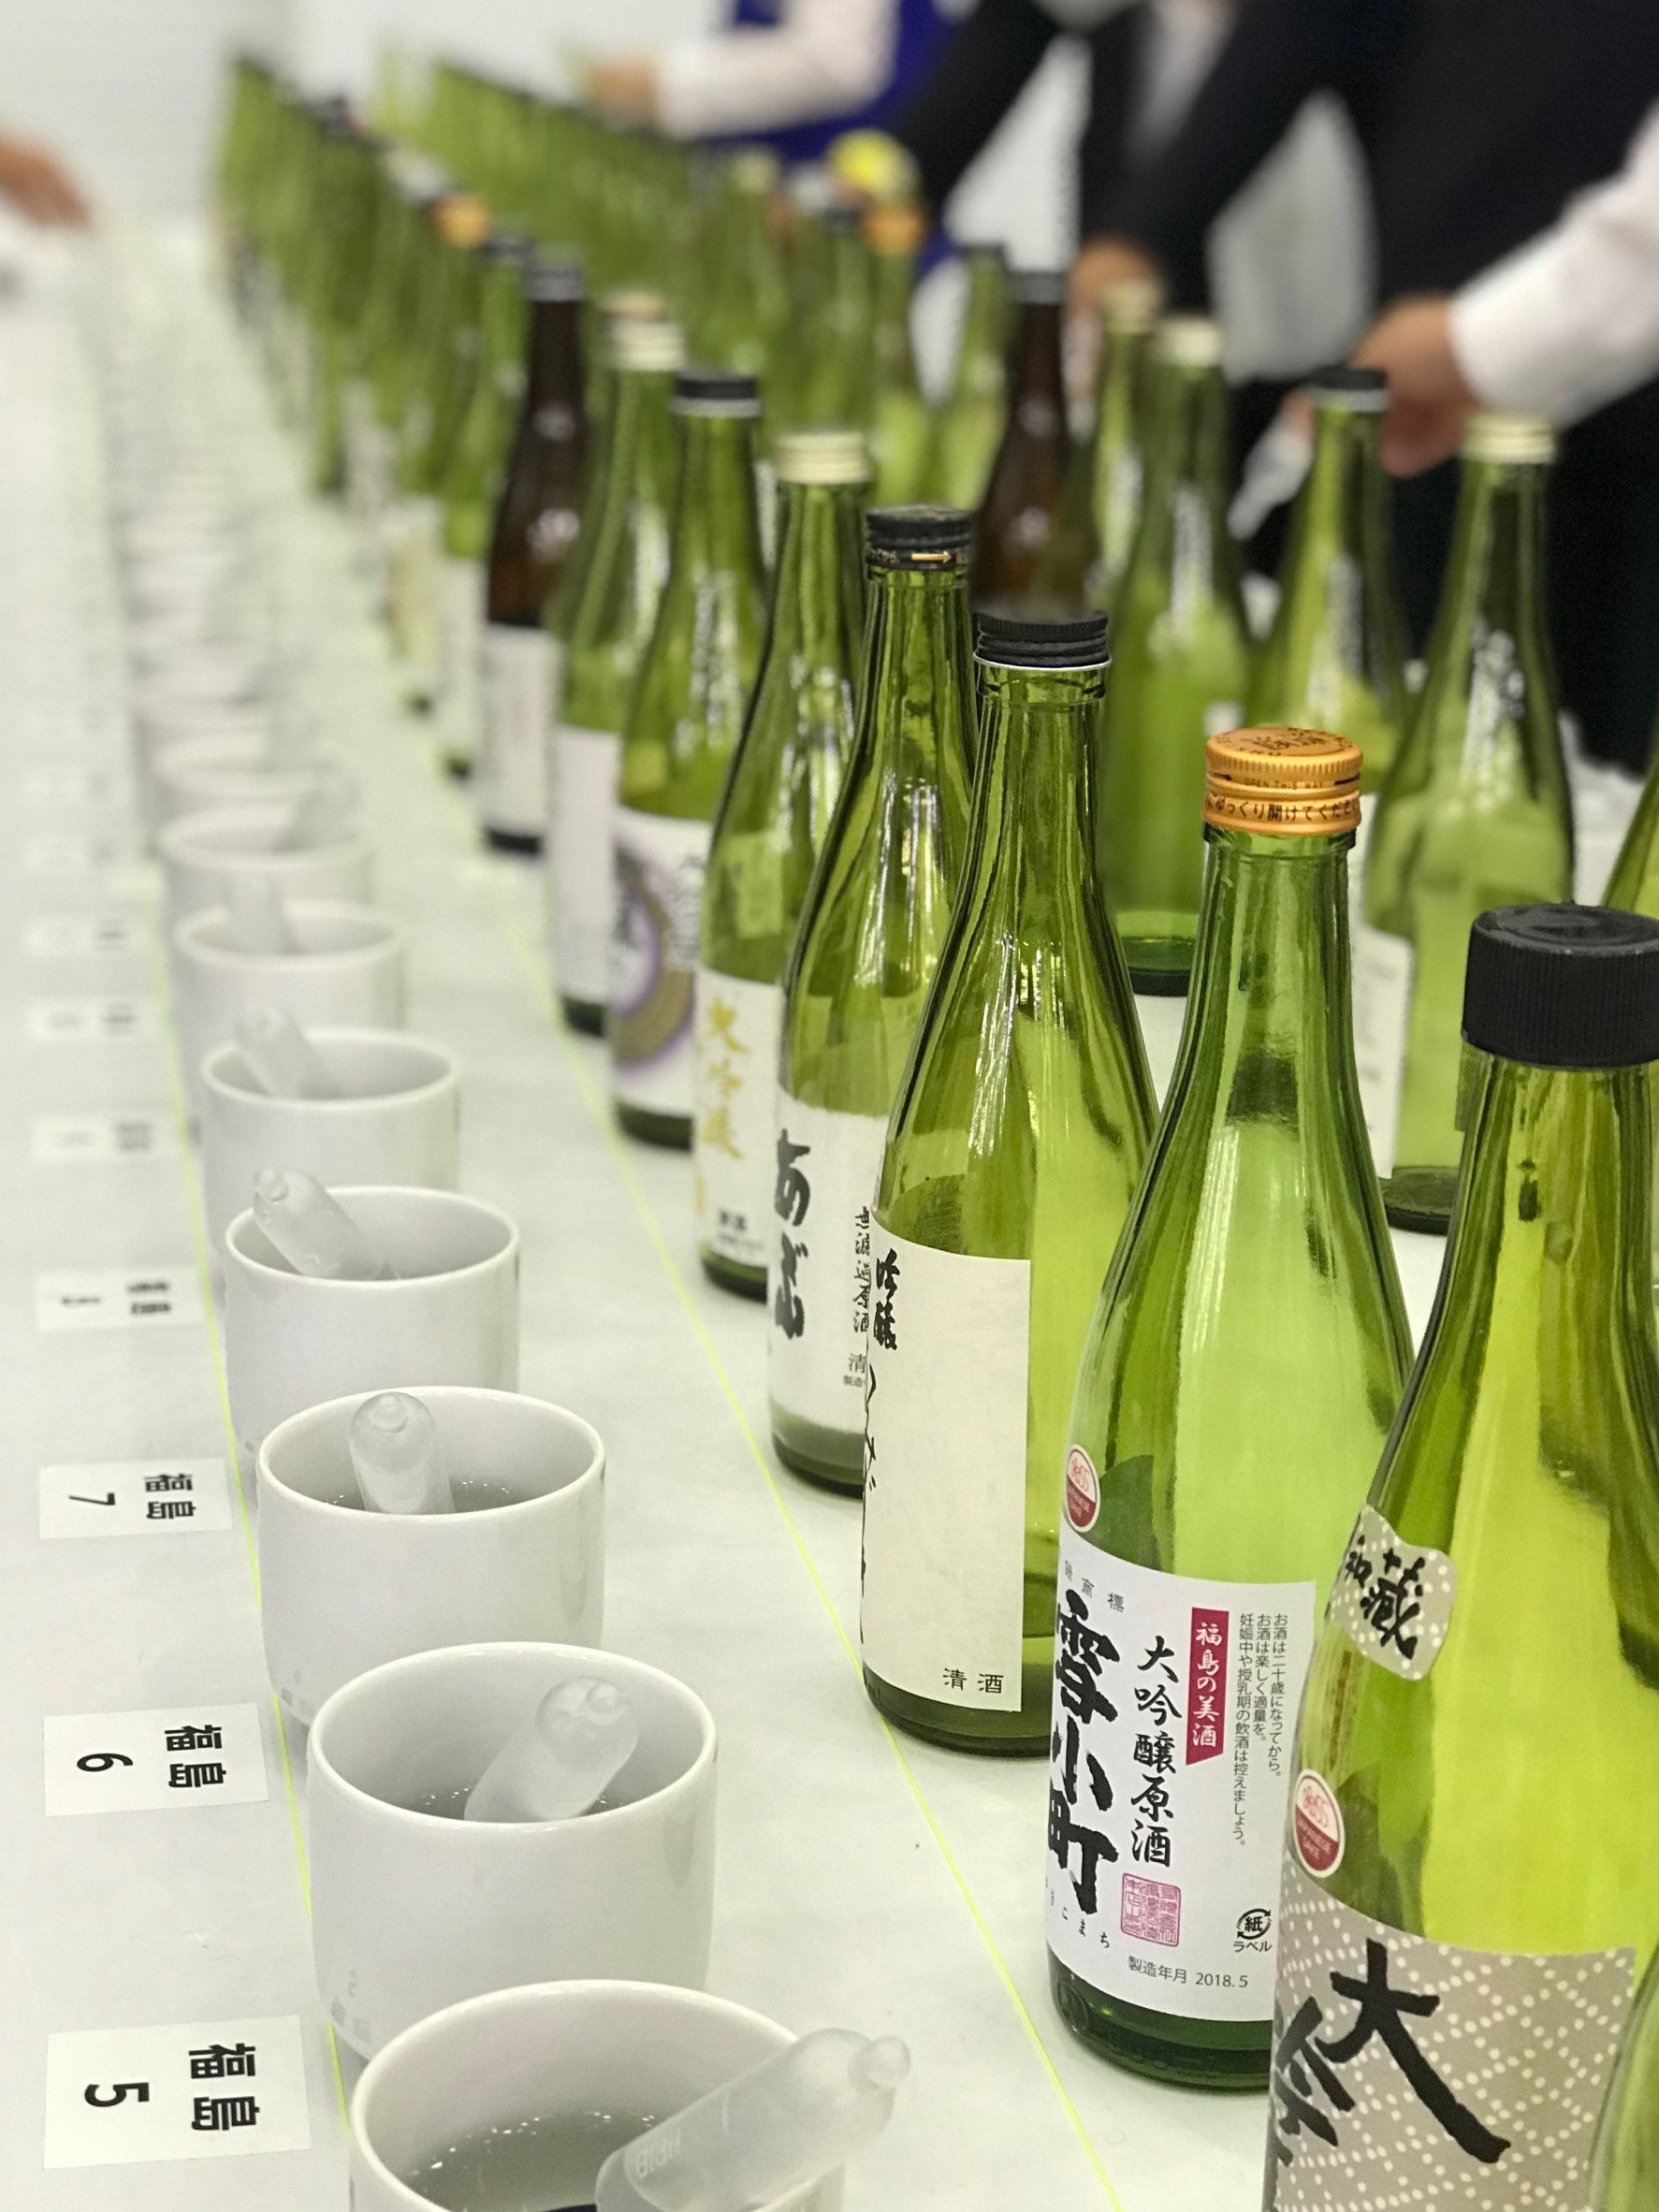 世界上最大的日本酒集会 品酒会 大纪元